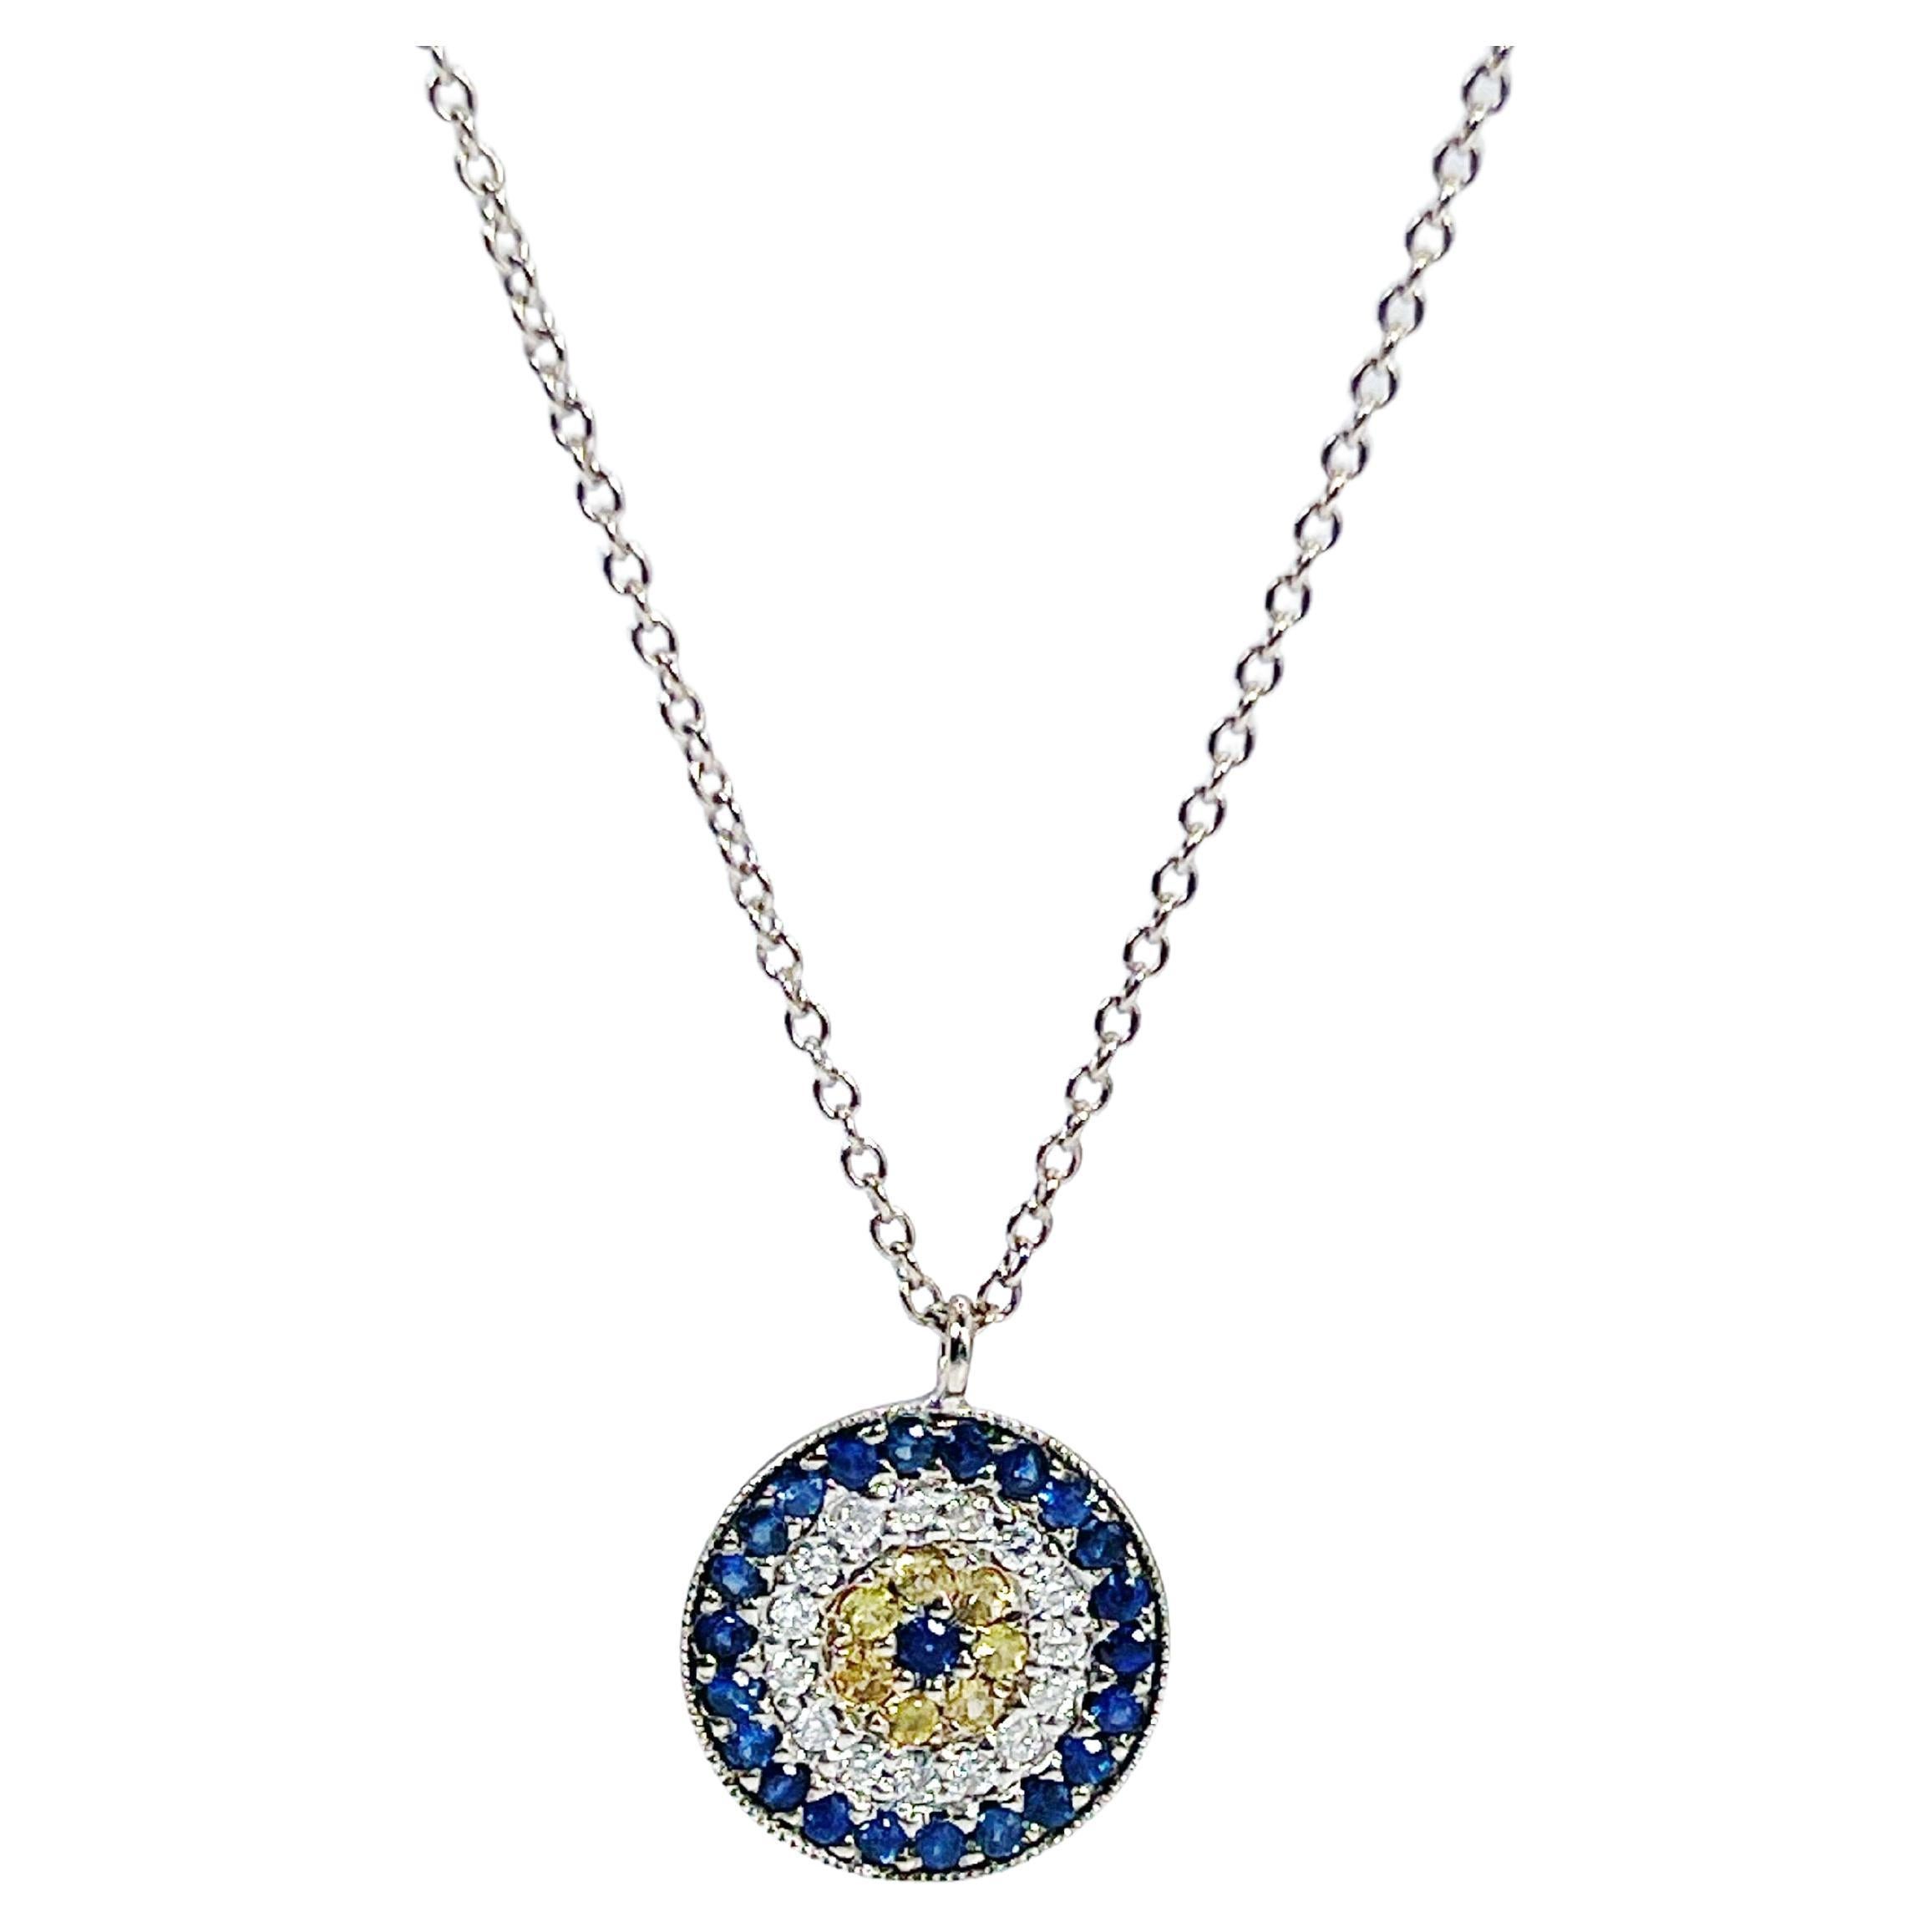 Evil Eye diamond pendant necklace 14KT white gold MEIRA 